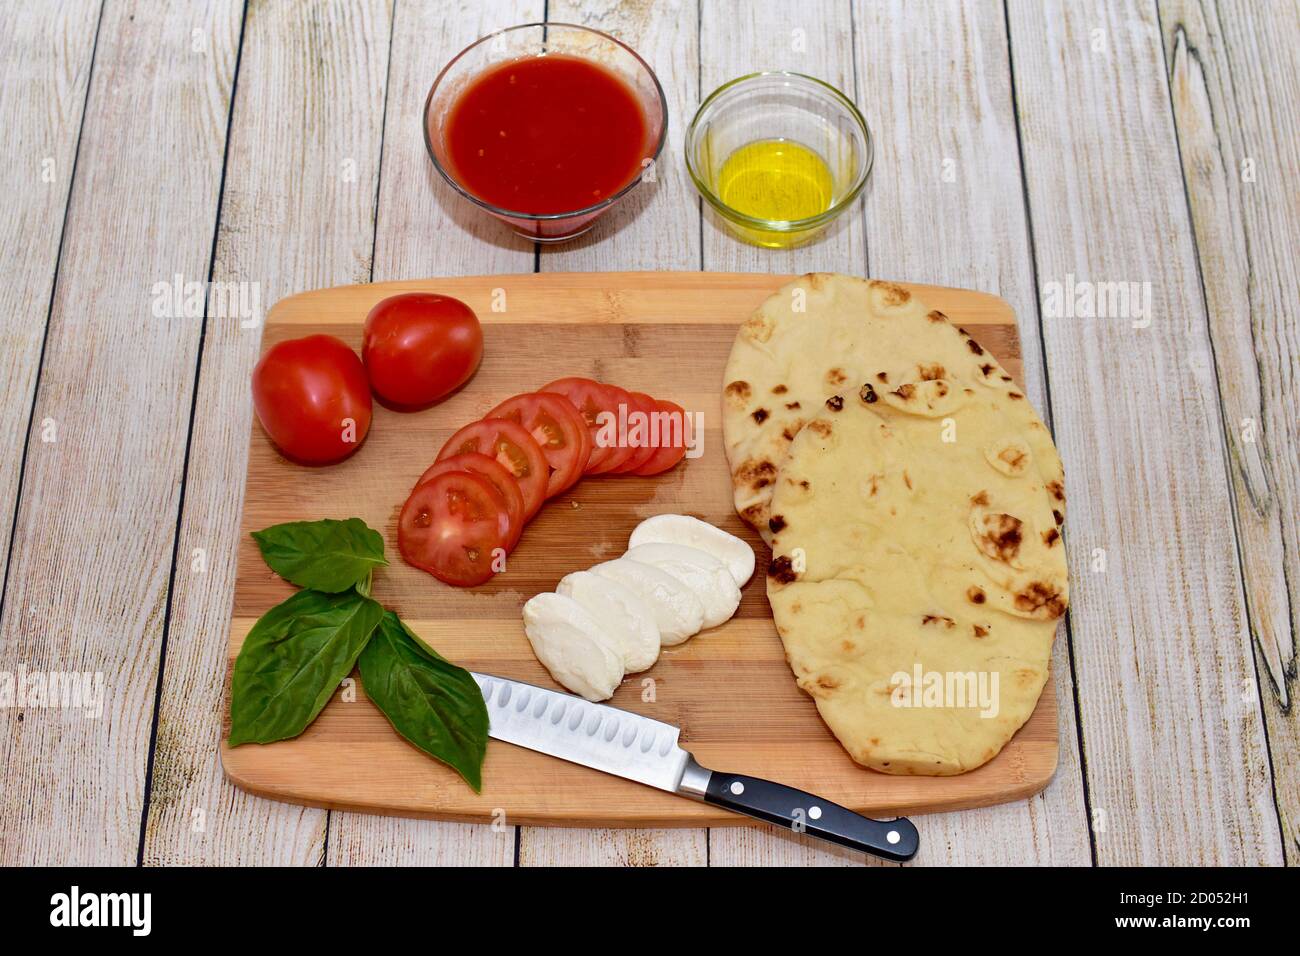 Frische Bio-gesunde einfache Mahlzeit Kit Zutaten bereit, um zuzubereiten Köstliche italienische Mahlzeiten mit Freunden und Familie zu teilen Stockfoto